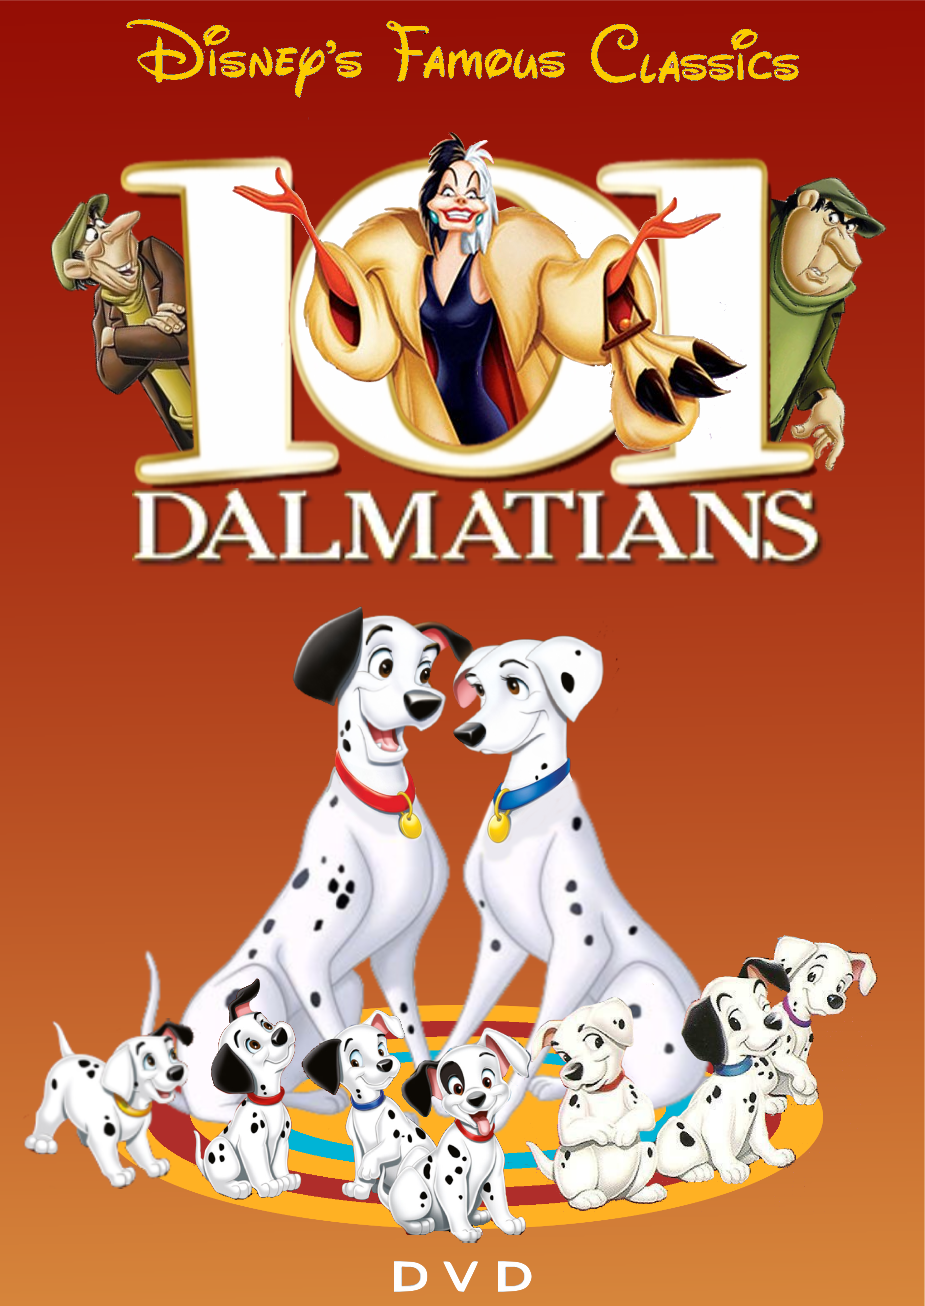 101 Dalmatians - DVD